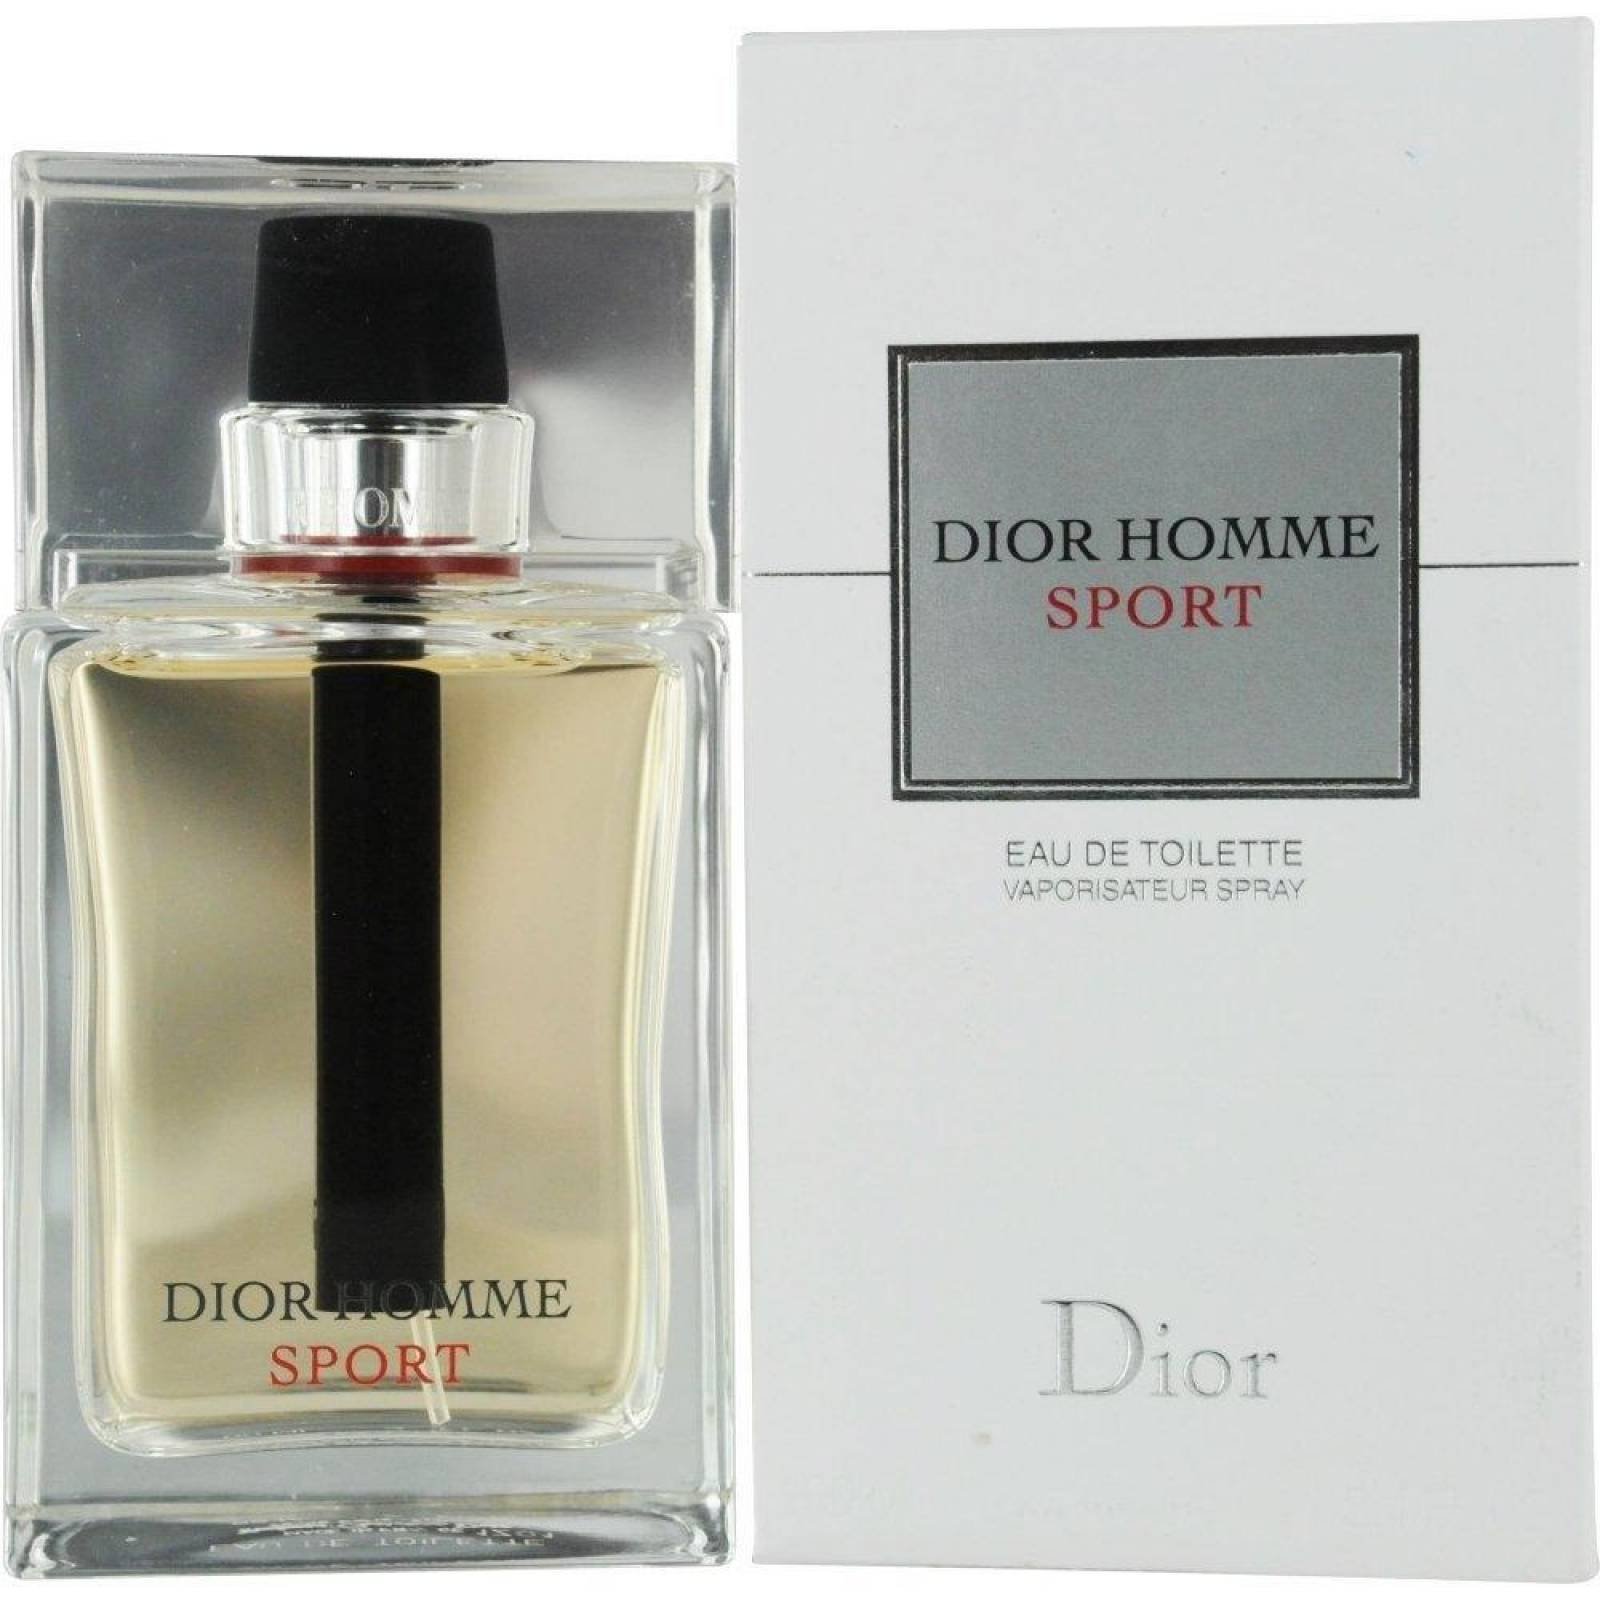 perfume dior homme sport precio > OFF-53%